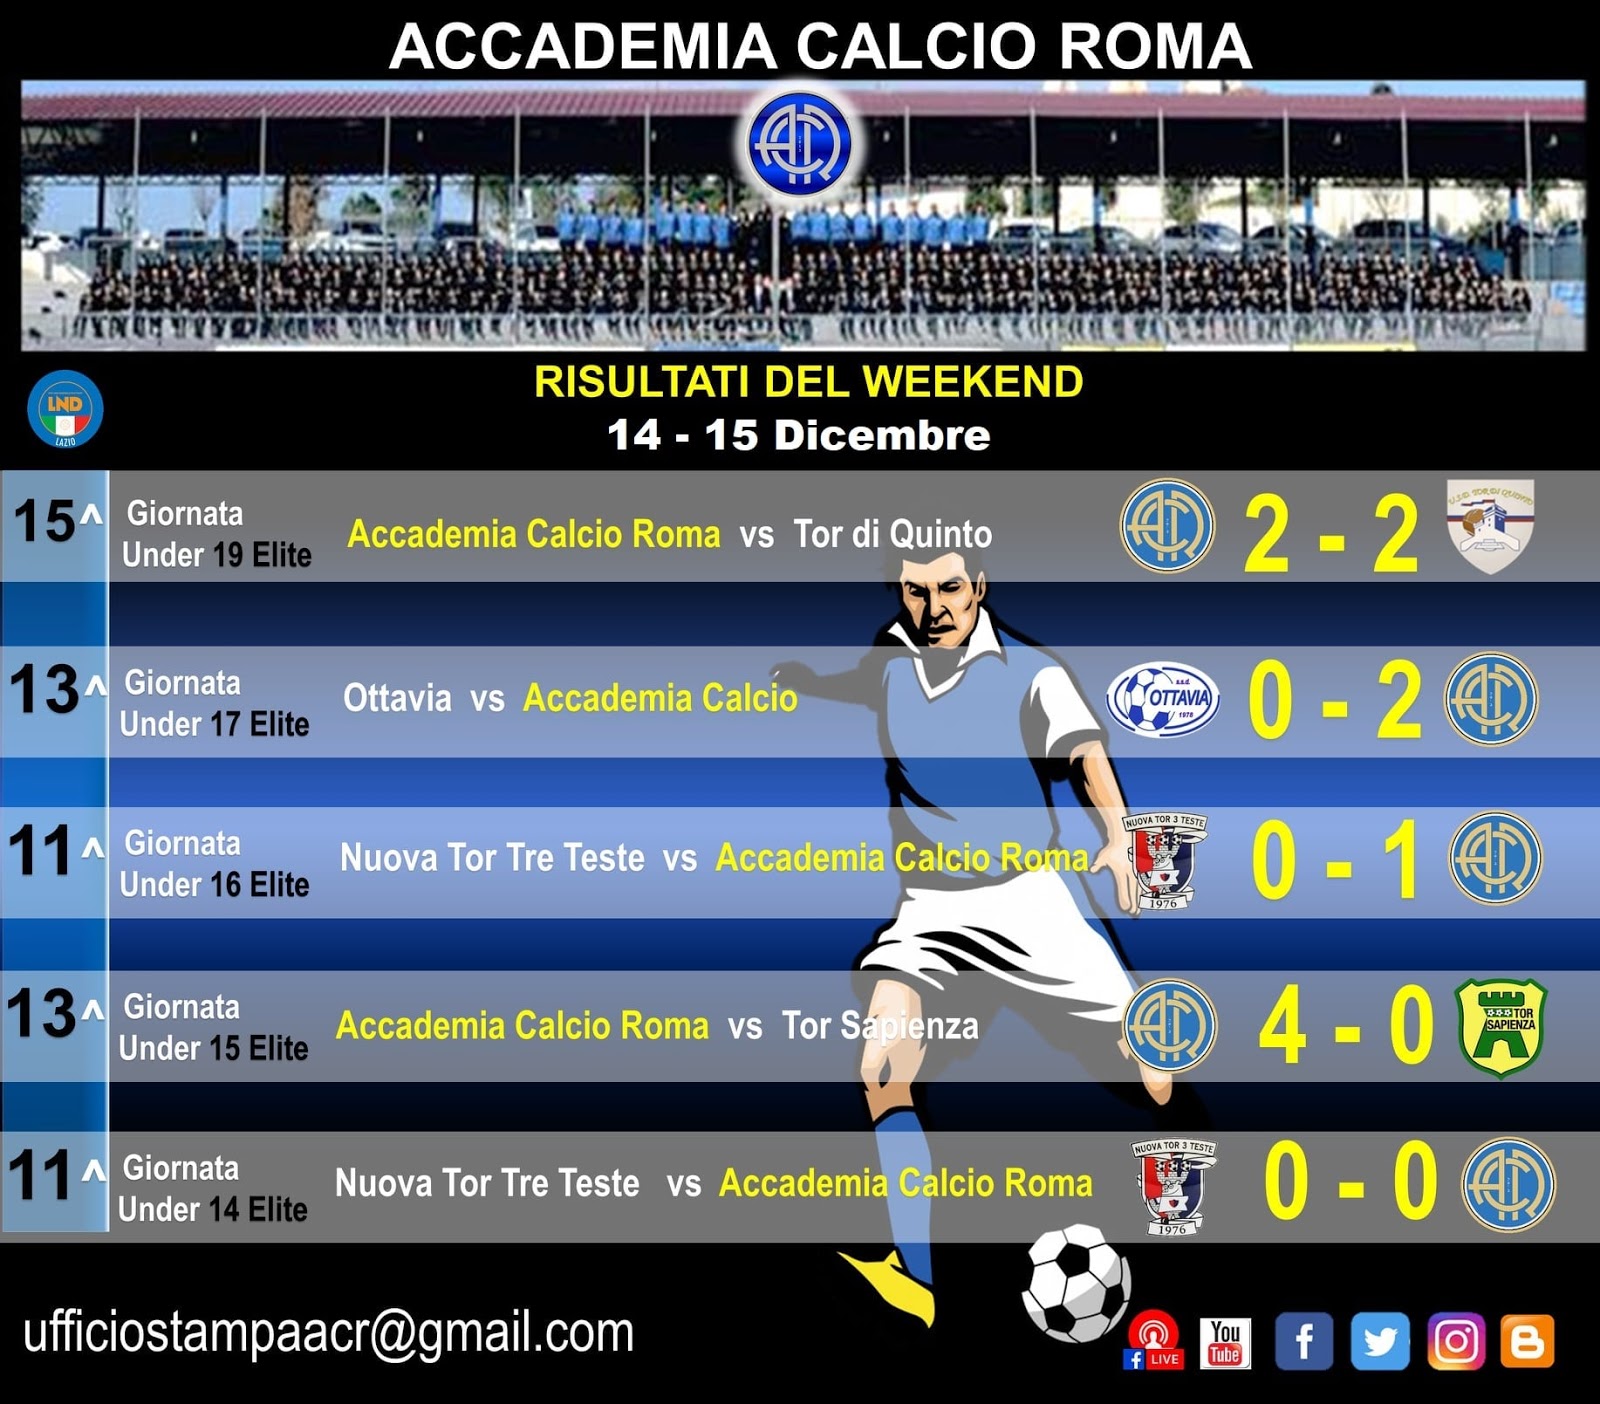 Accademia Calcio Roma 19